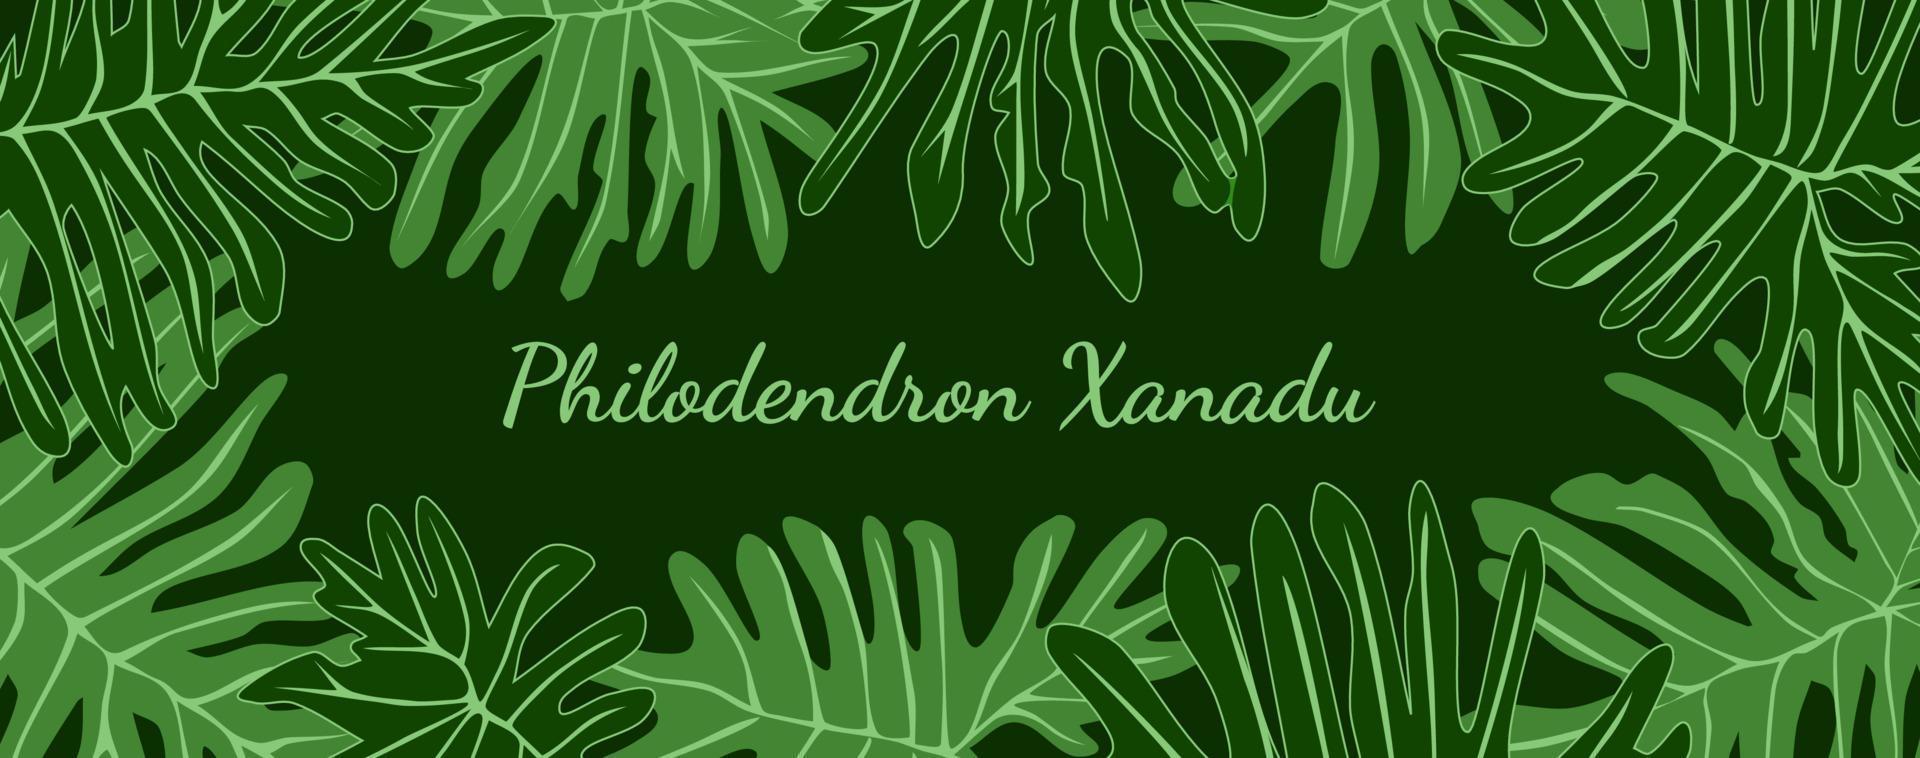 cadre de feuilles tropicales de philodendron xanadu avec placez votre texte. feuillage vert bannière fond illustration vectorielle. vecteur